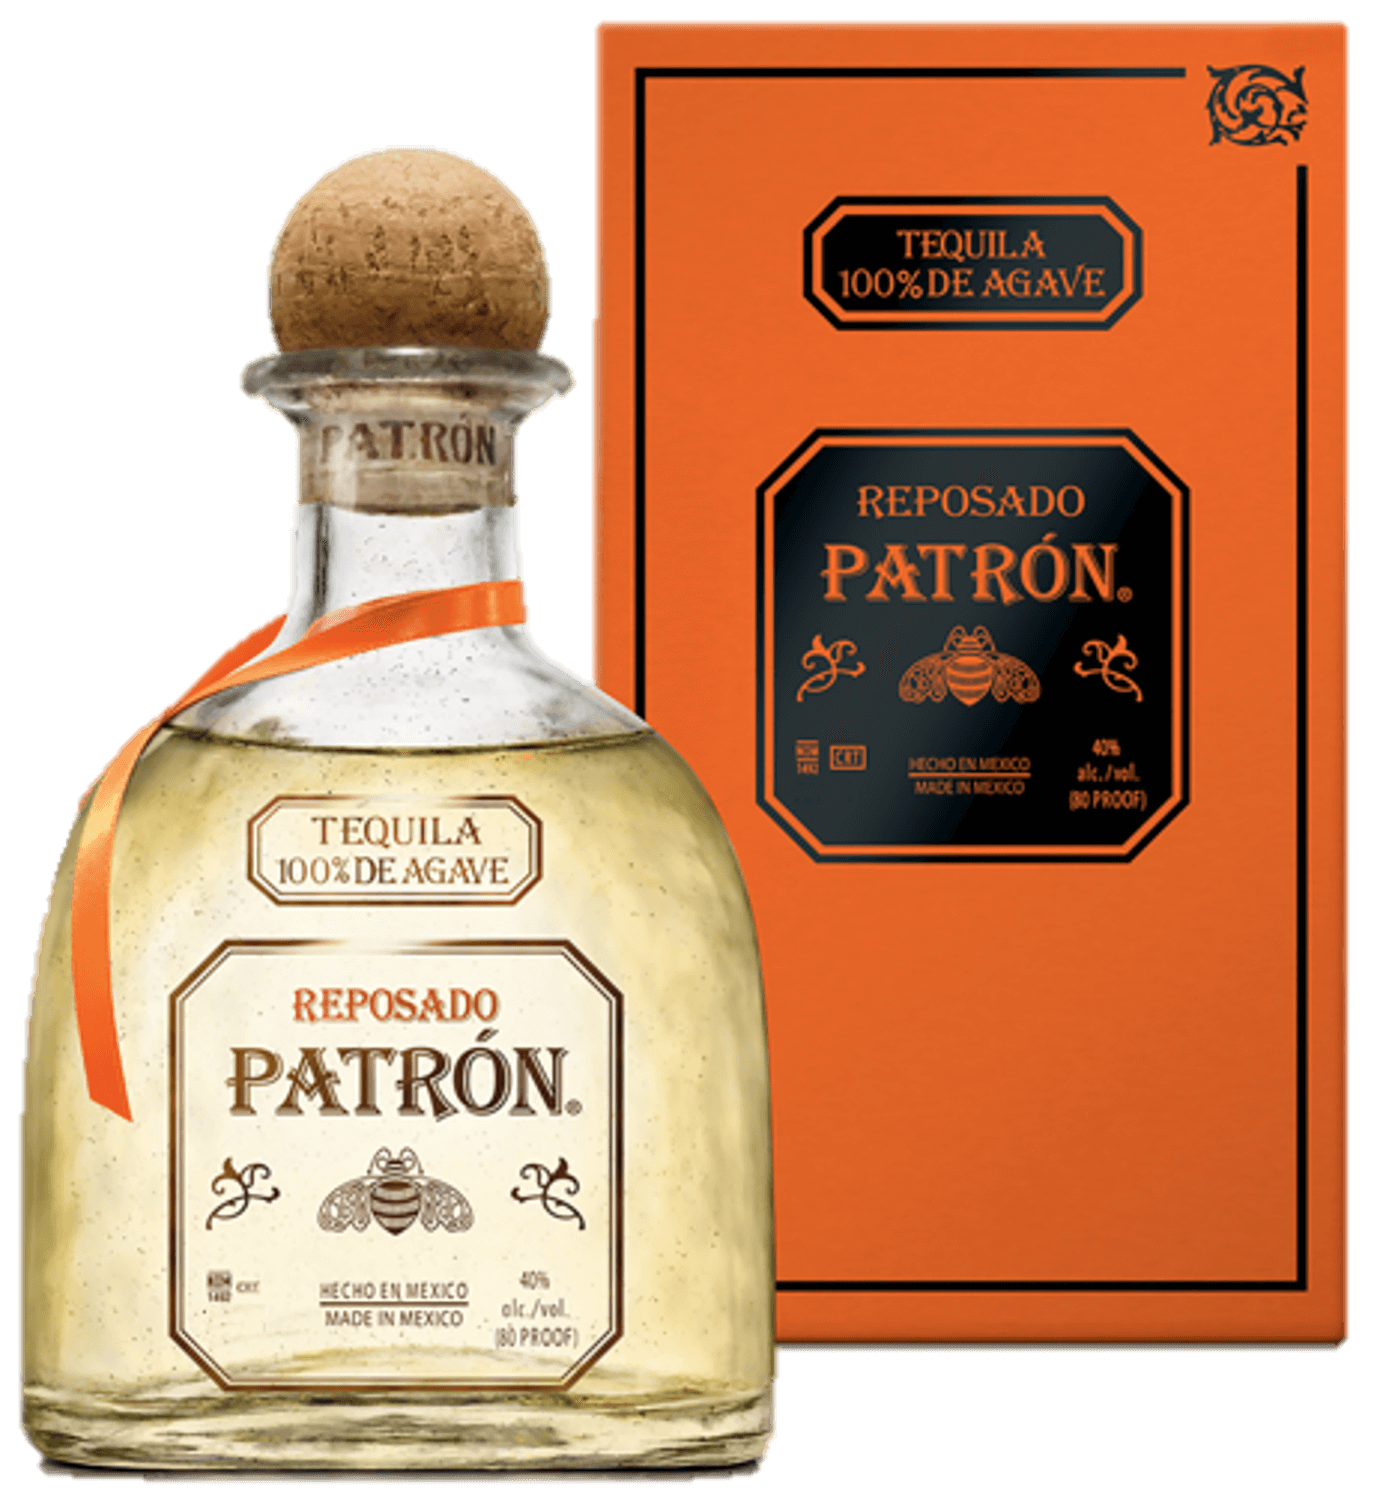 Patron Reposado (gift box) patron patron набор ключей patron p 5088p